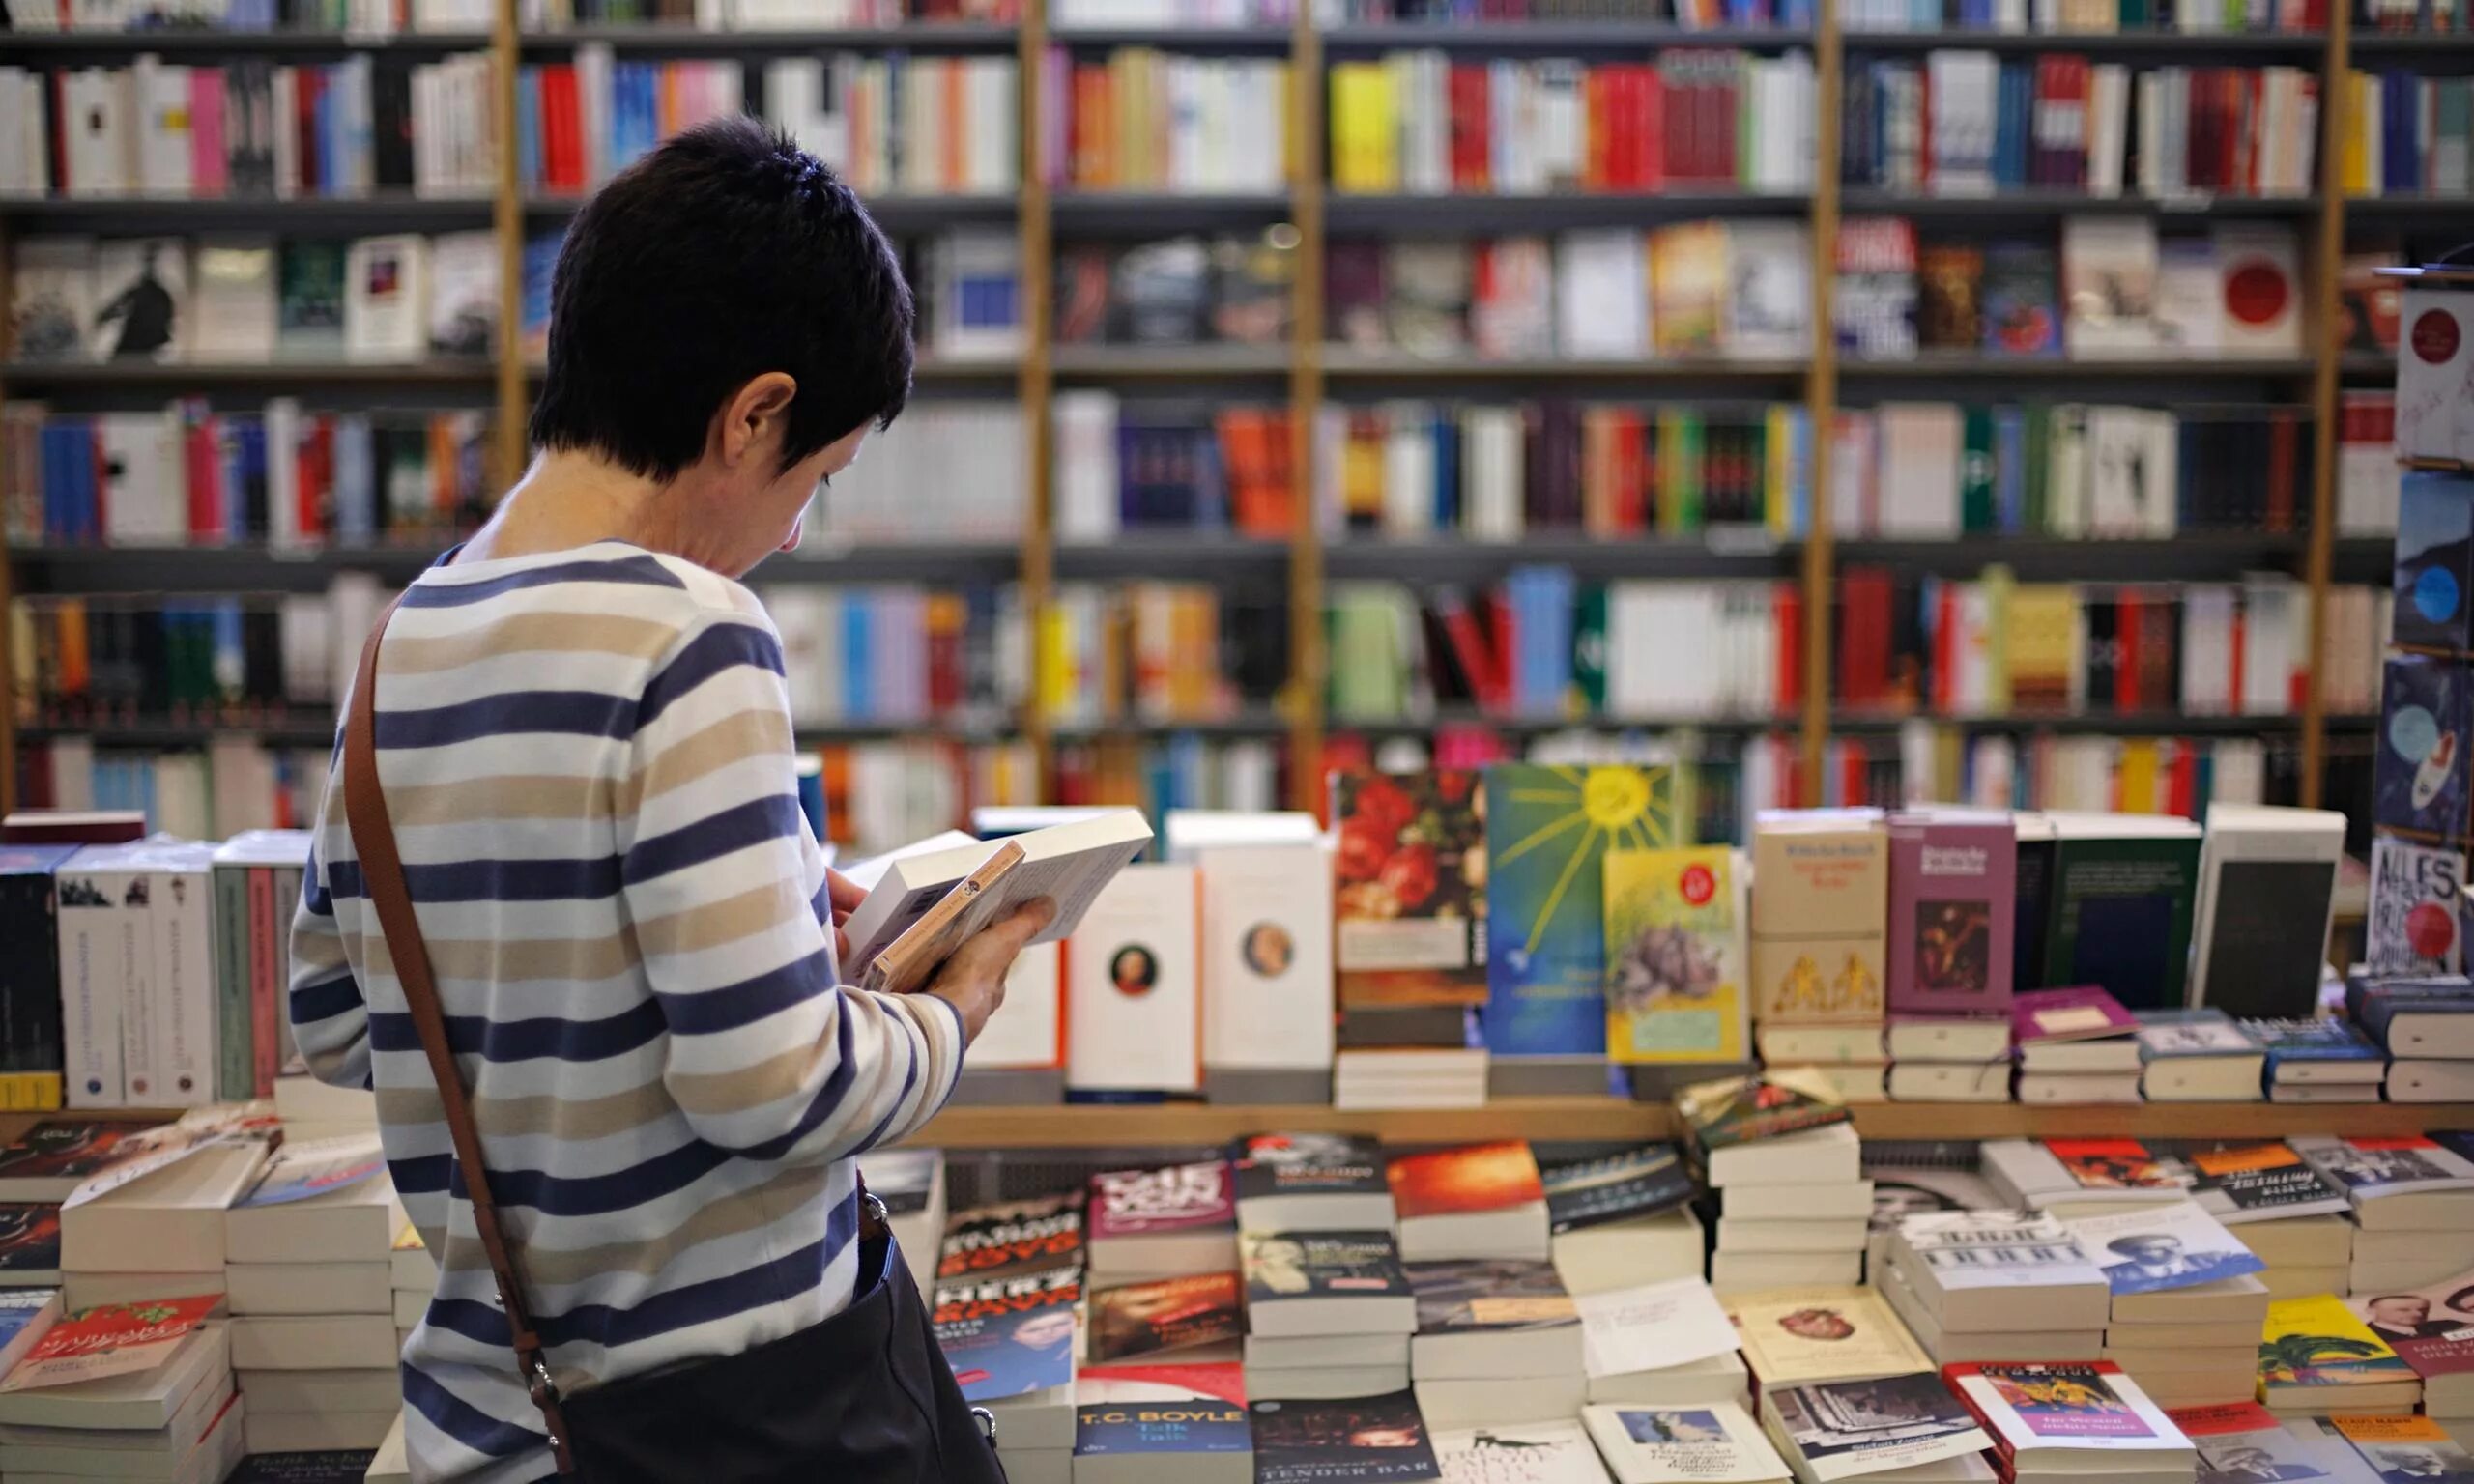 Покупка книг видео. Люди в книжном магазине. Покупатели в книжном магазине. Чтение книг в книжном магазине. Прилавок с книгами.